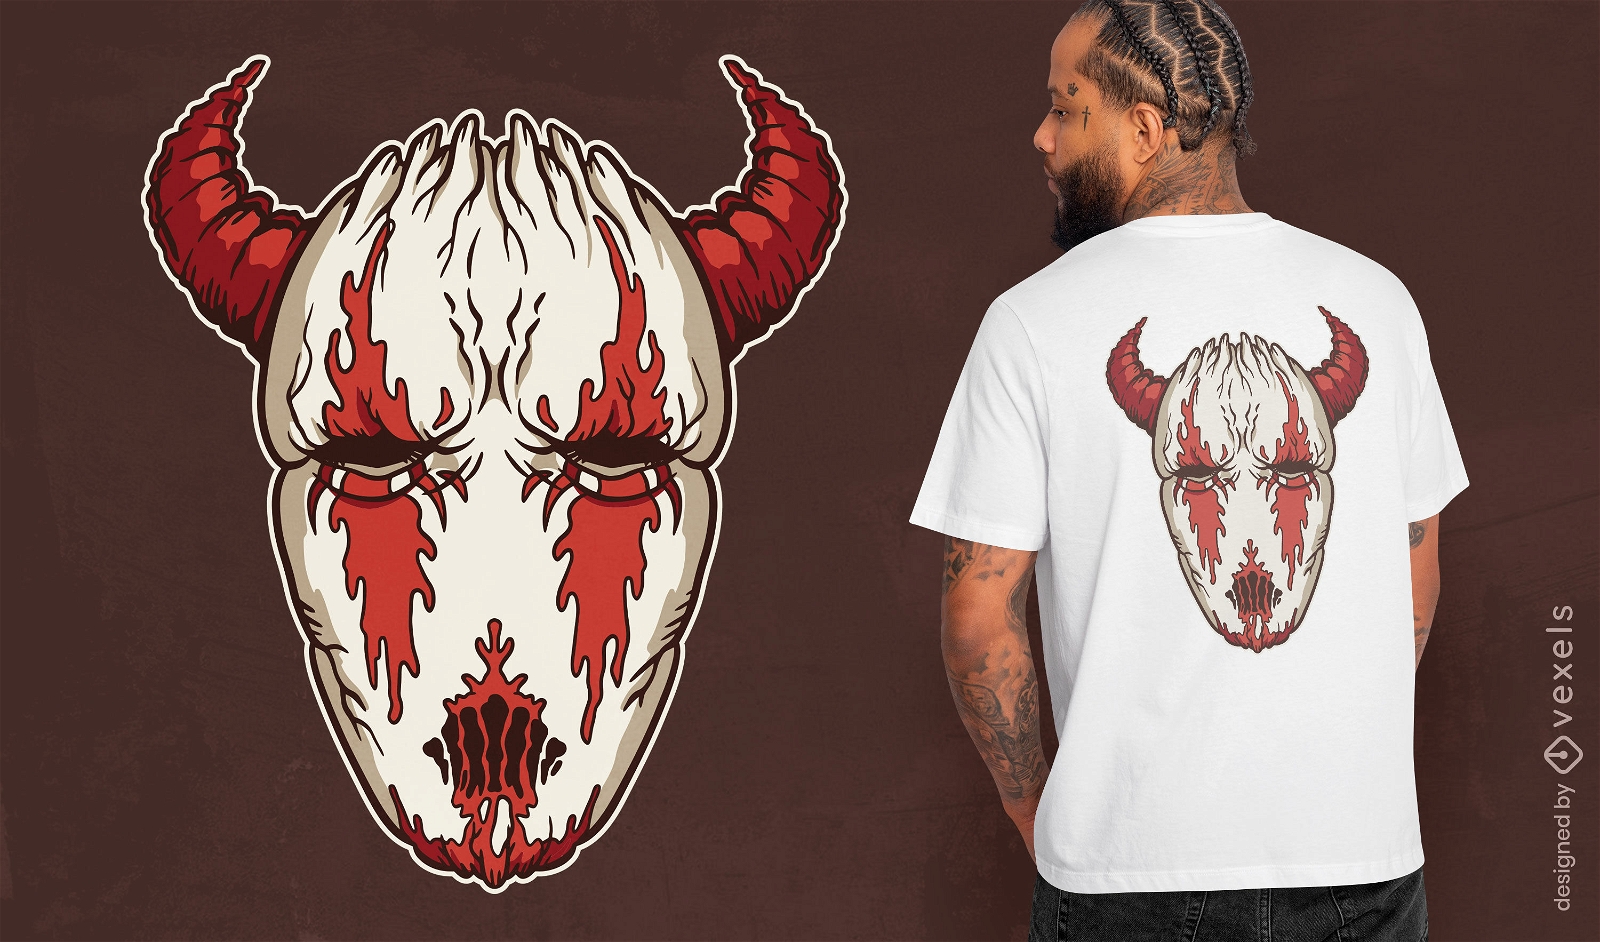 Diabolische Maske mit H?rner-T-Shirt-Design